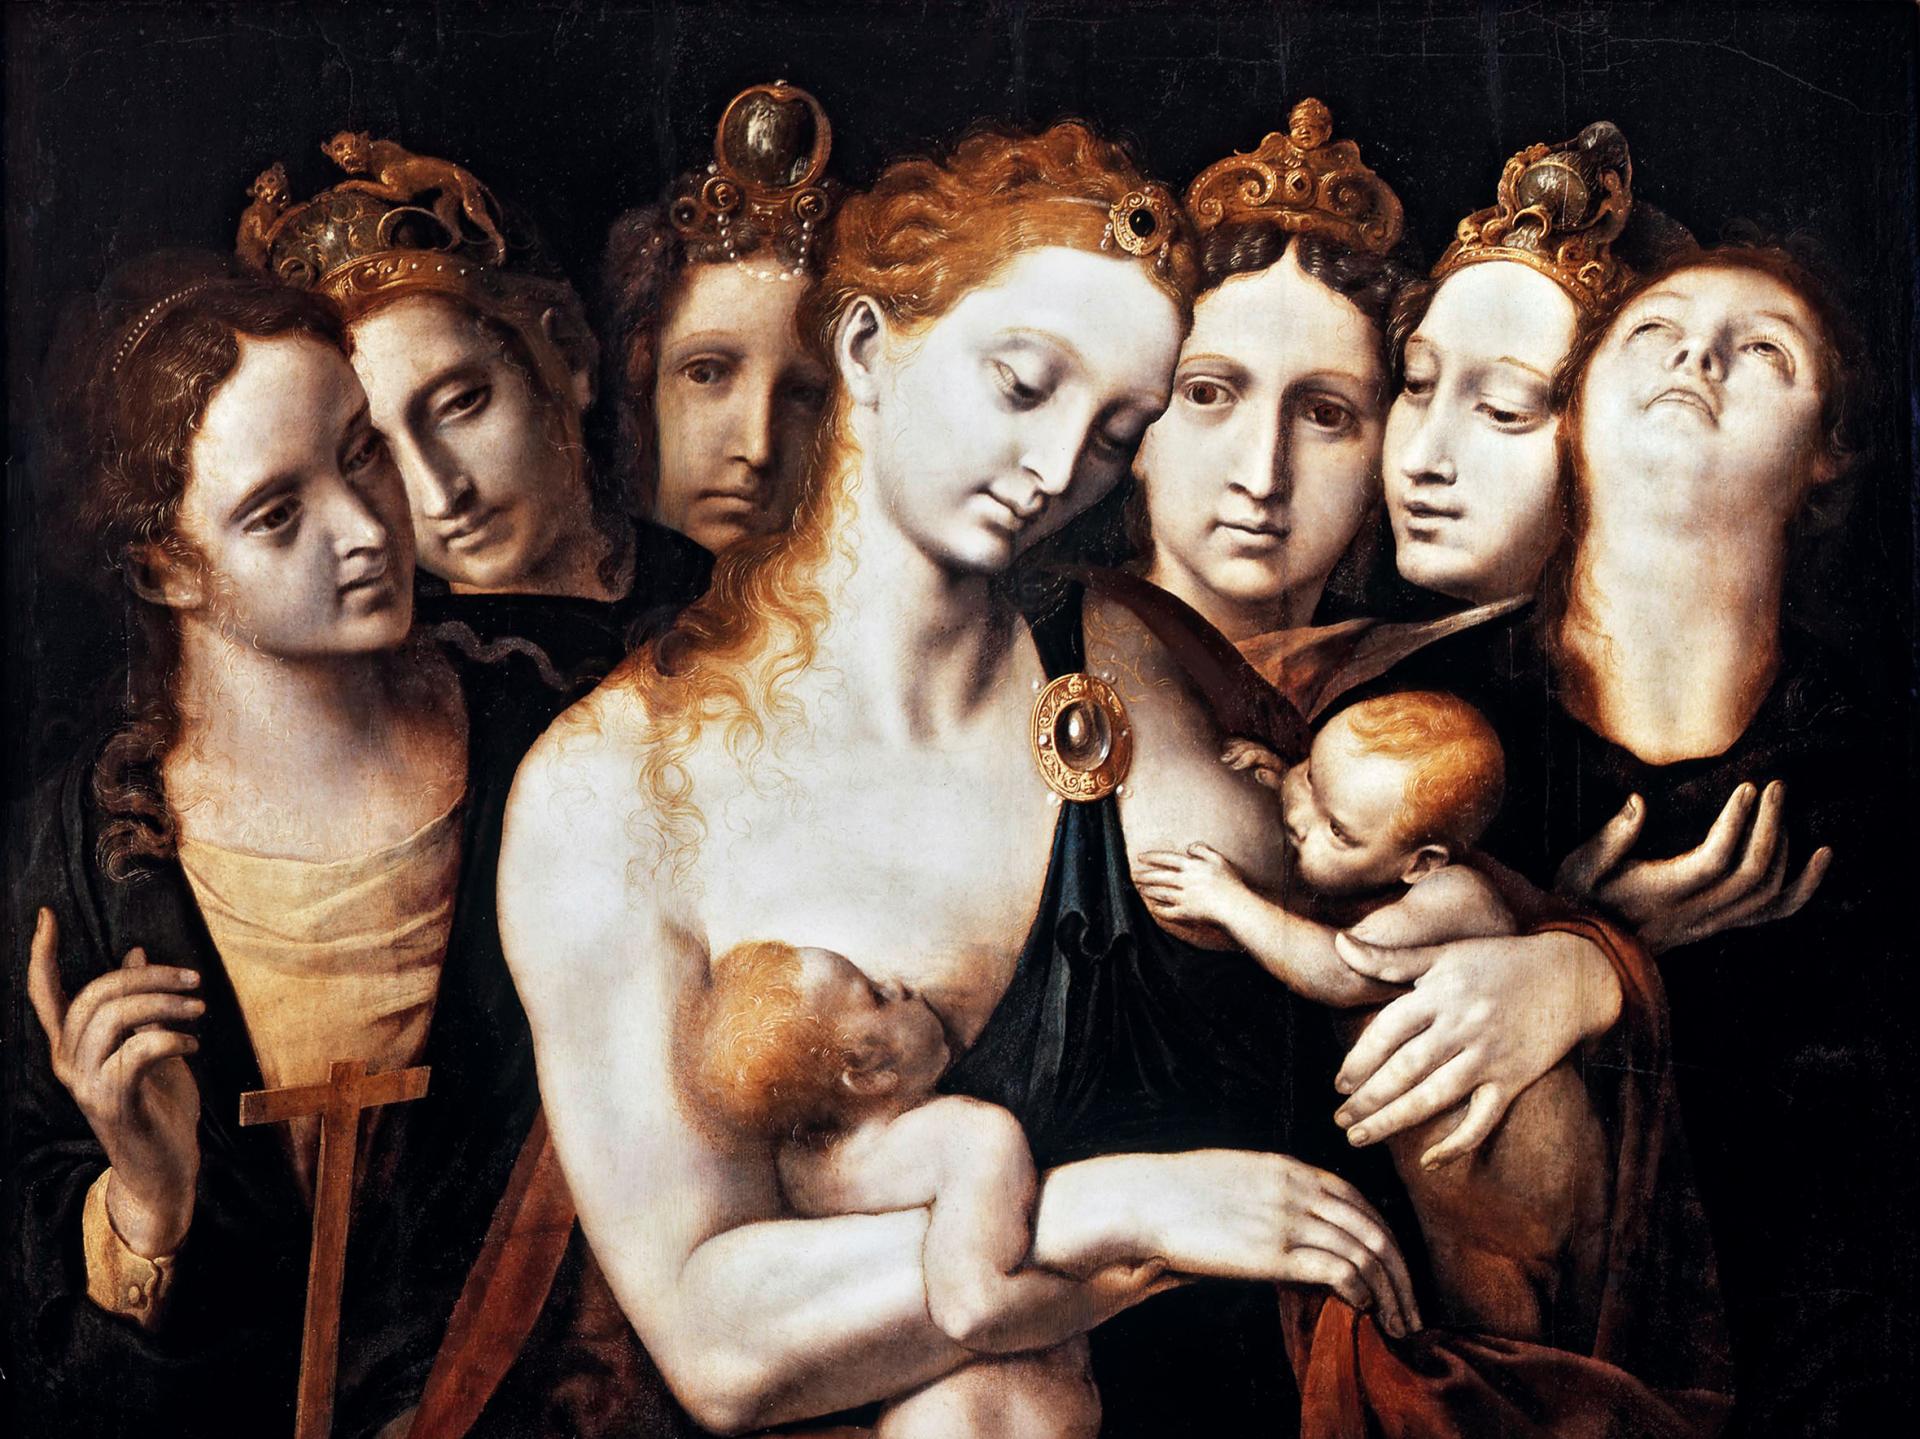 Obra con siete figuras femeninas, una de ellas amamantando a dos bebés